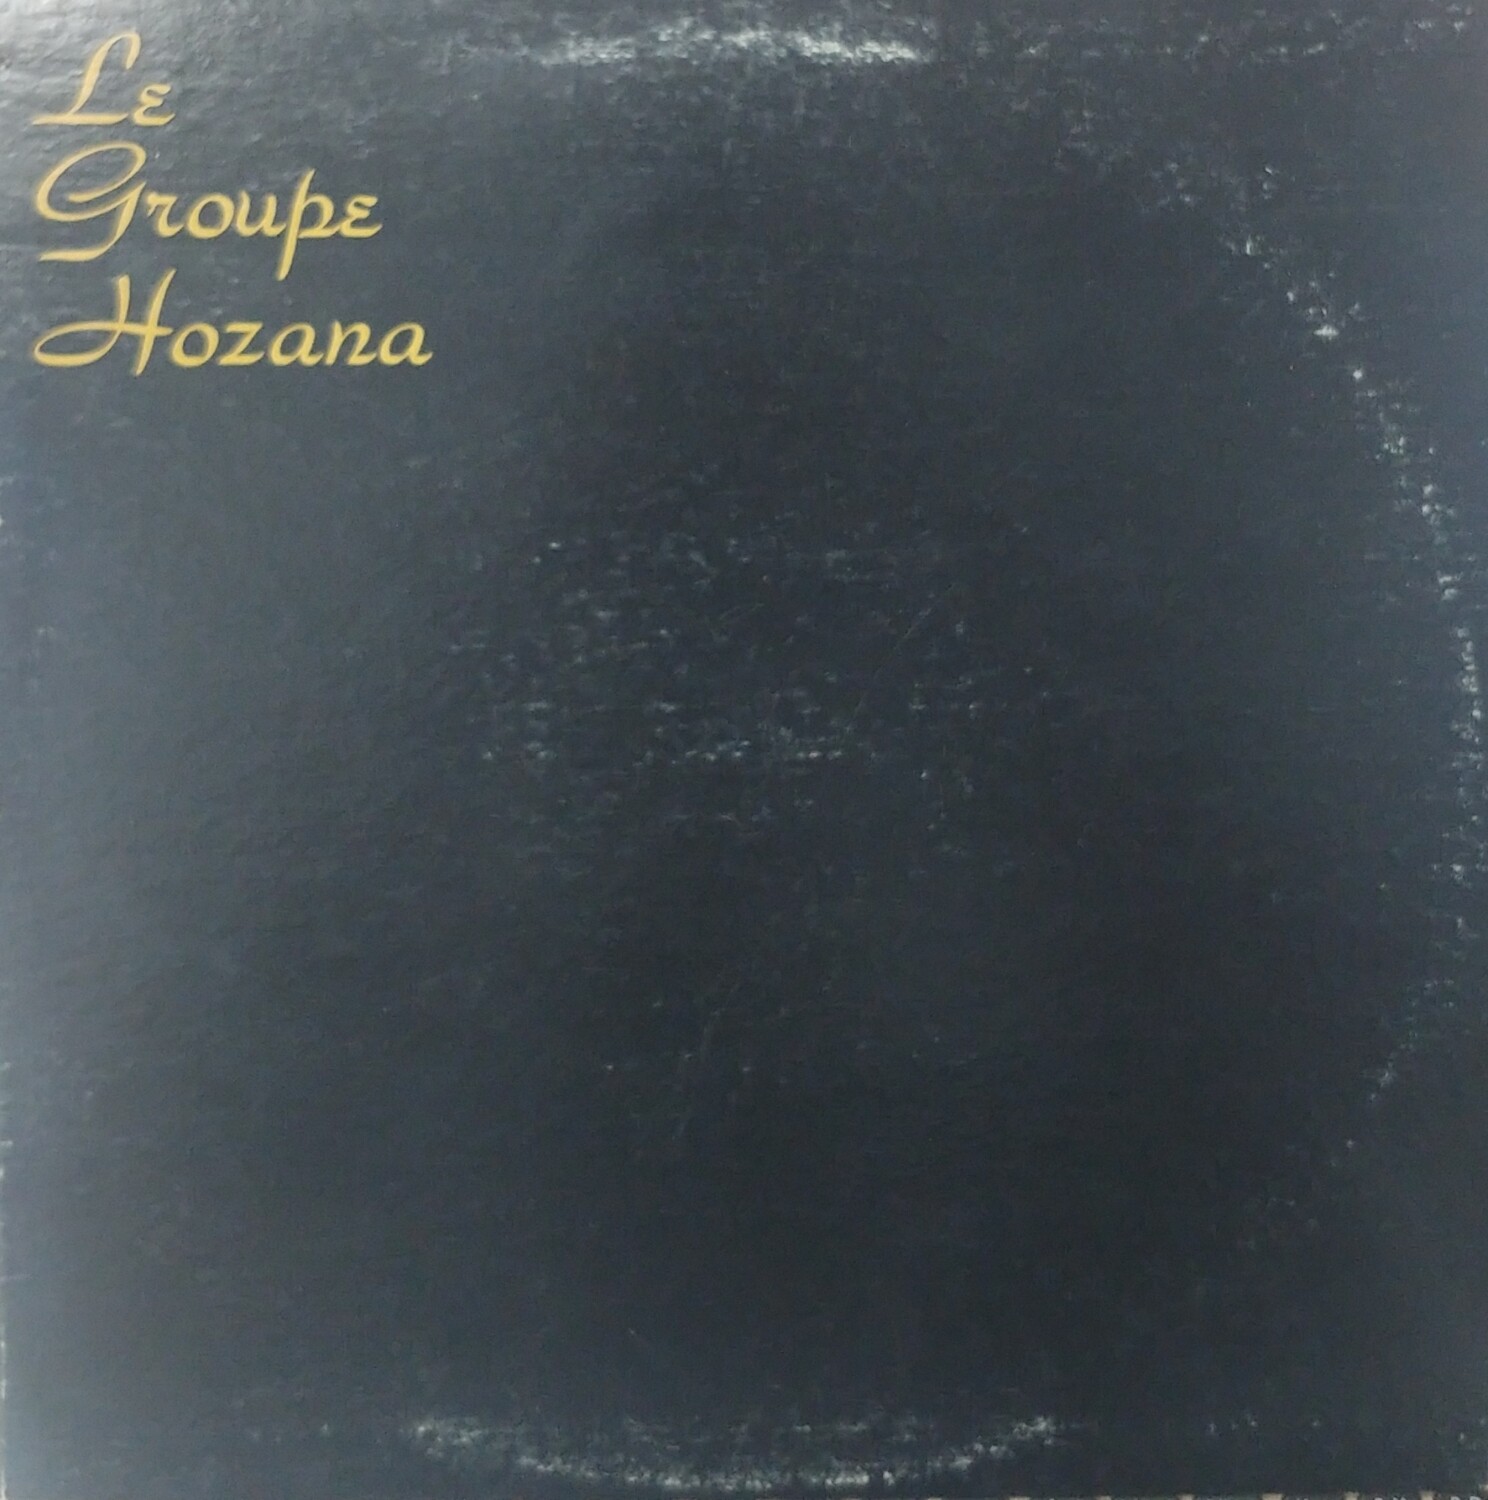 Le groupe Hozana - Le groupe Hozana